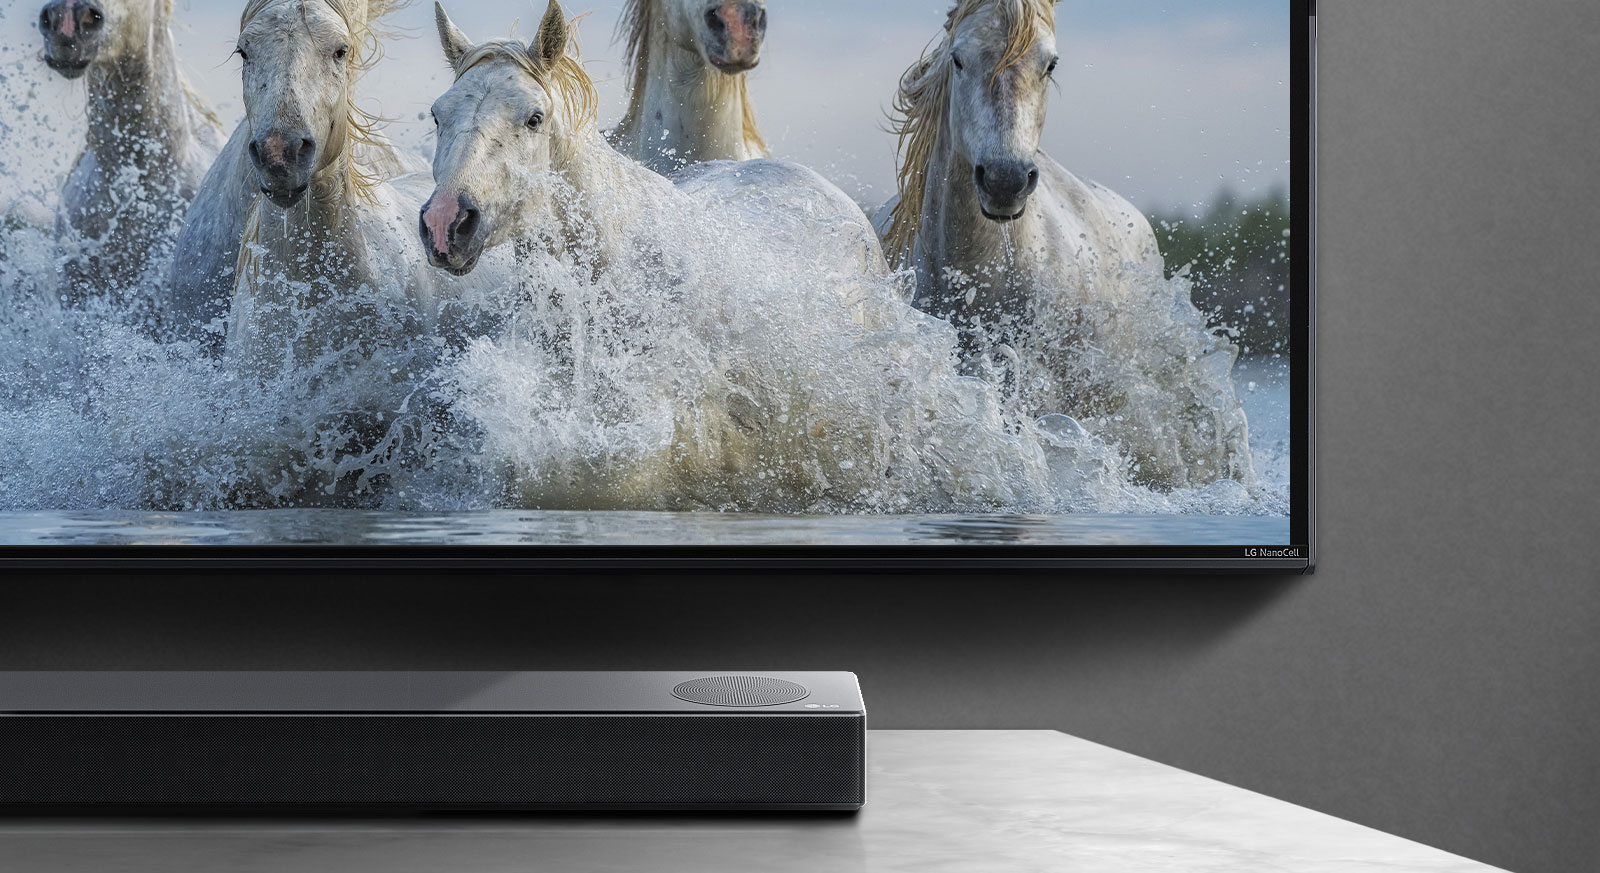 Polovina spodní obrazovky a polovina soundbaru. Na displeji televizoru běží bílé koně po vodě. 